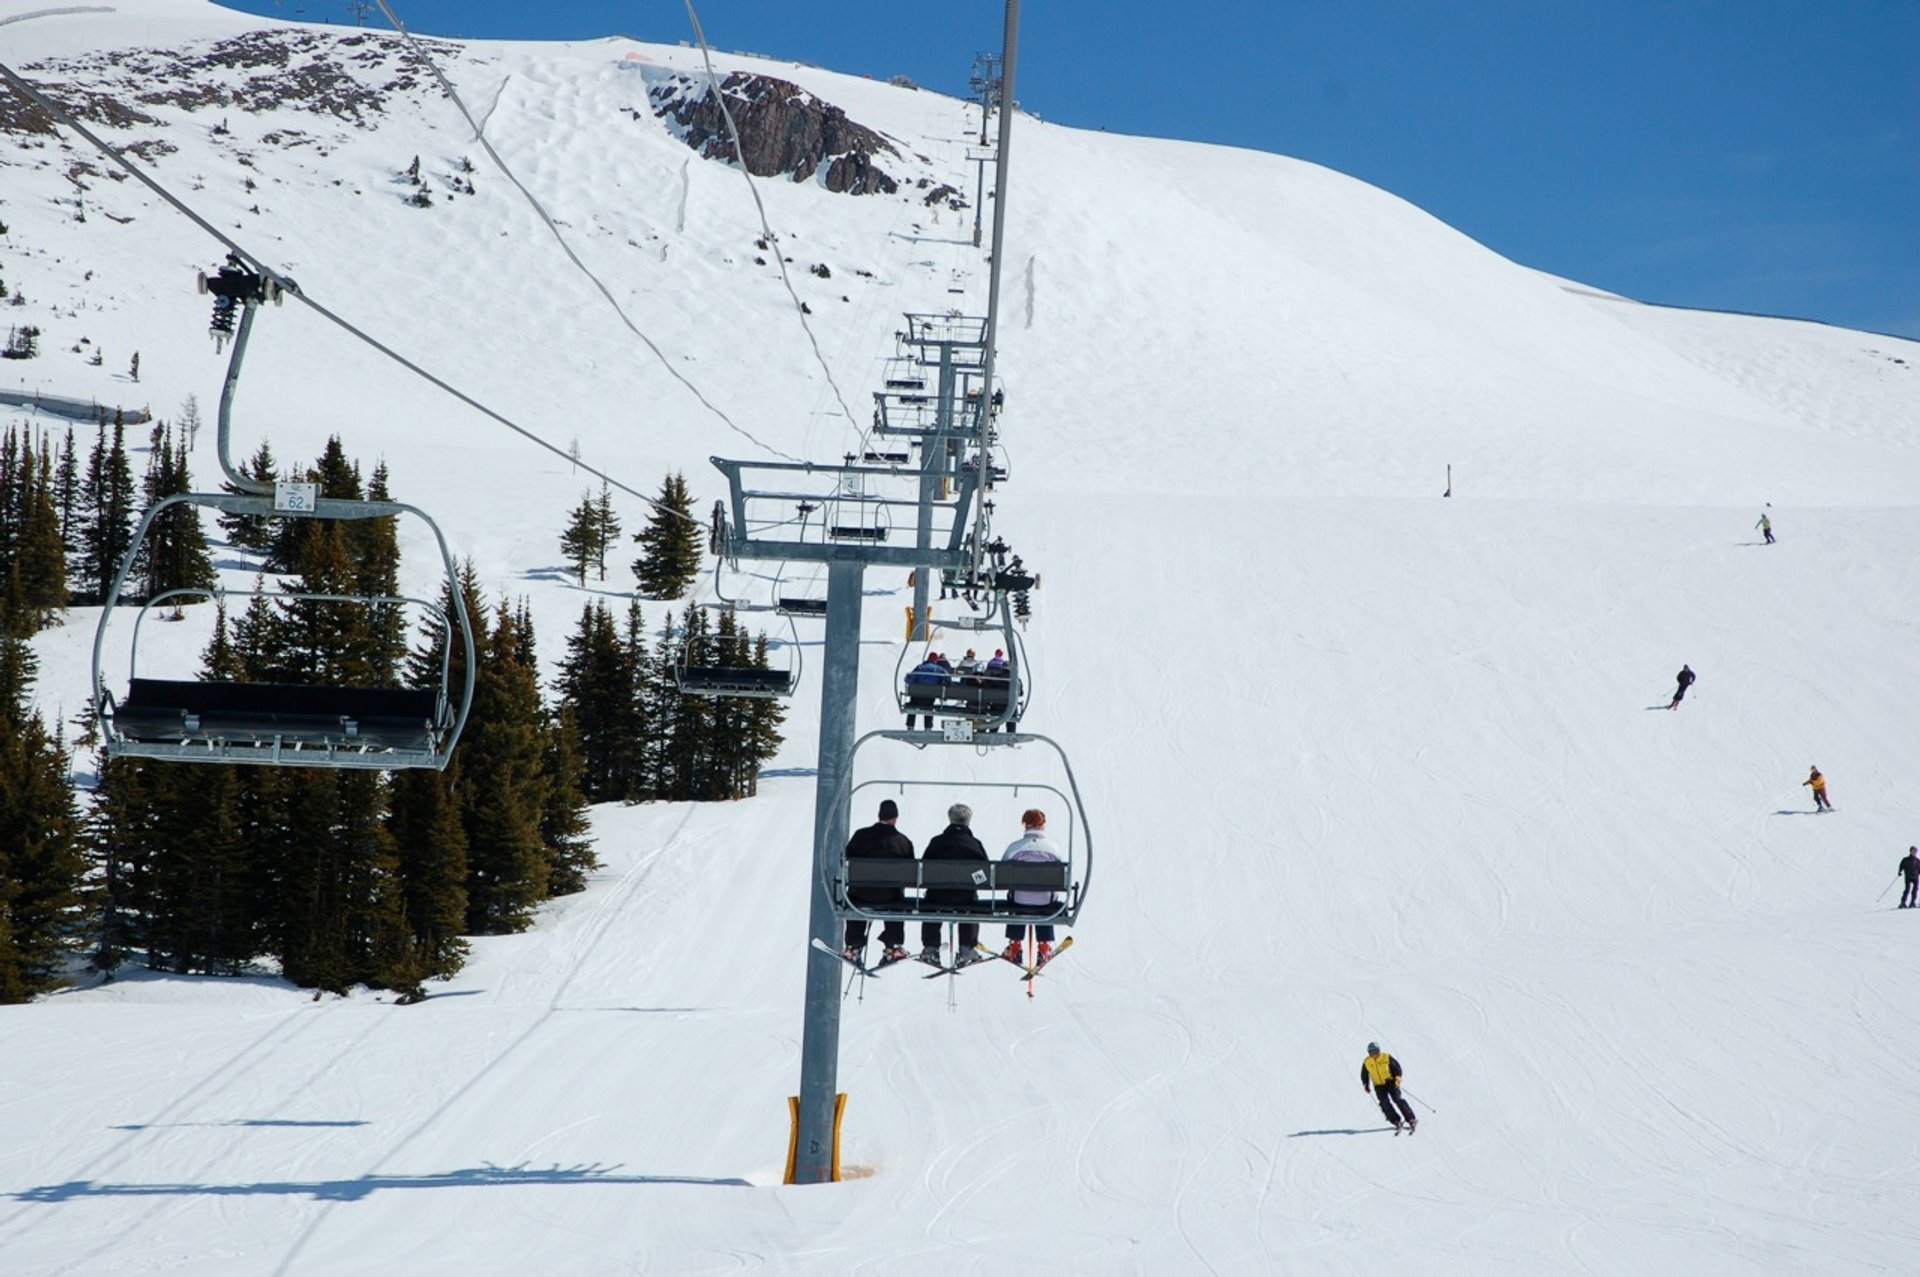 Esquí y snowboard